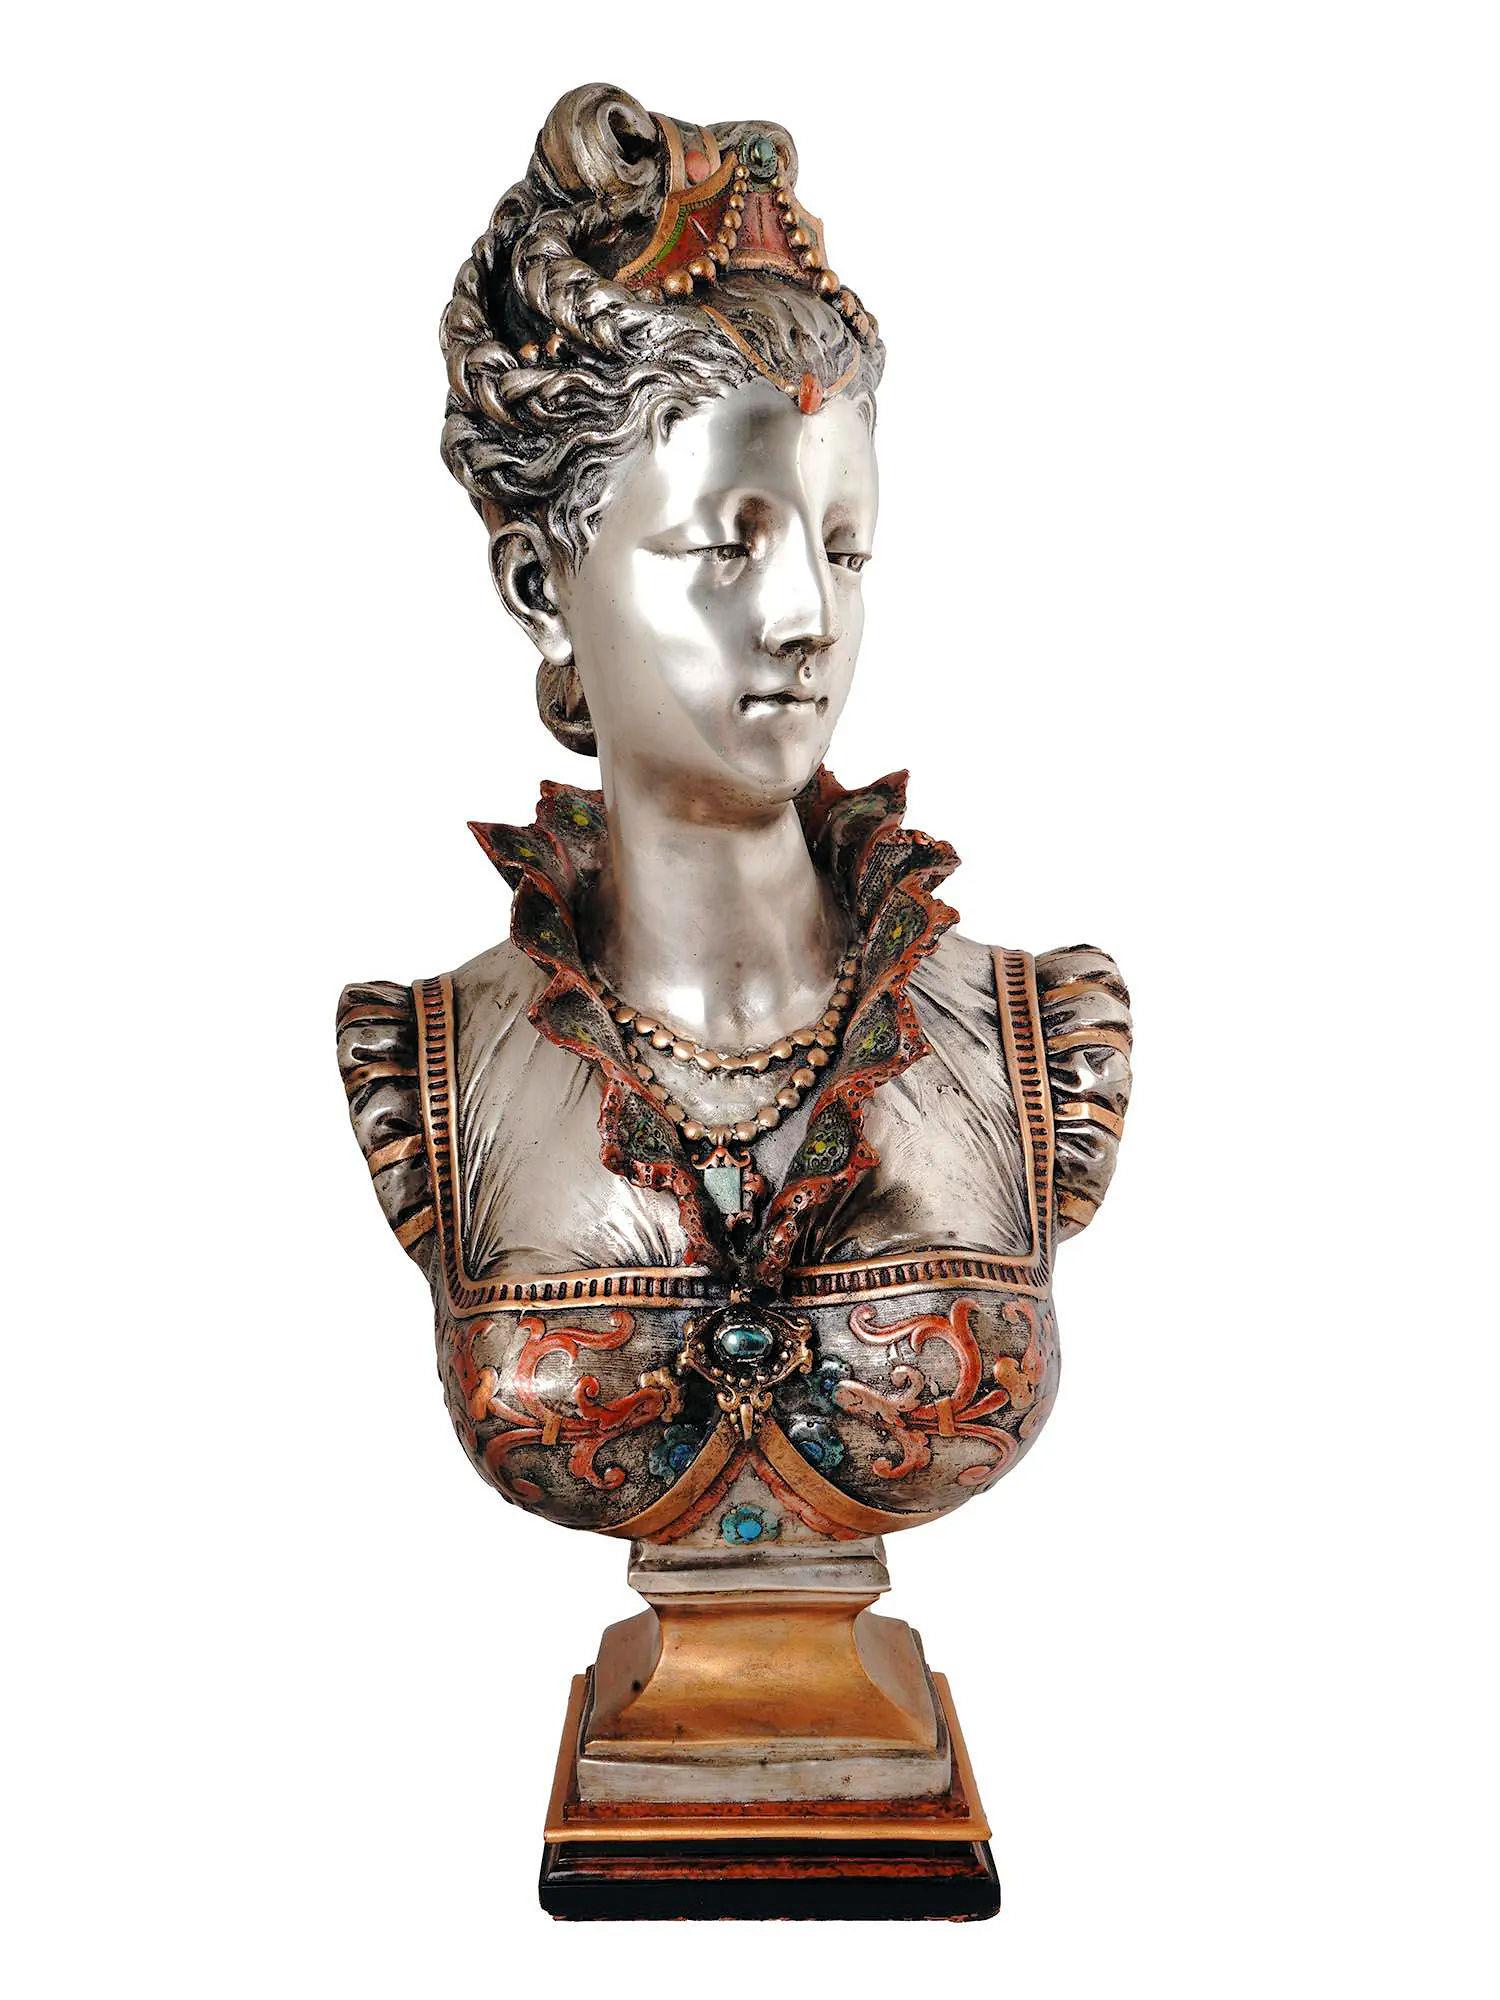 Versilberte und emaillierte Bronzebüste einer Florentiner Prinzessin im Renaissance-Stil nach dem Originalmodell von Vincent Desire Faure de Brousse, gegossen um 1940.